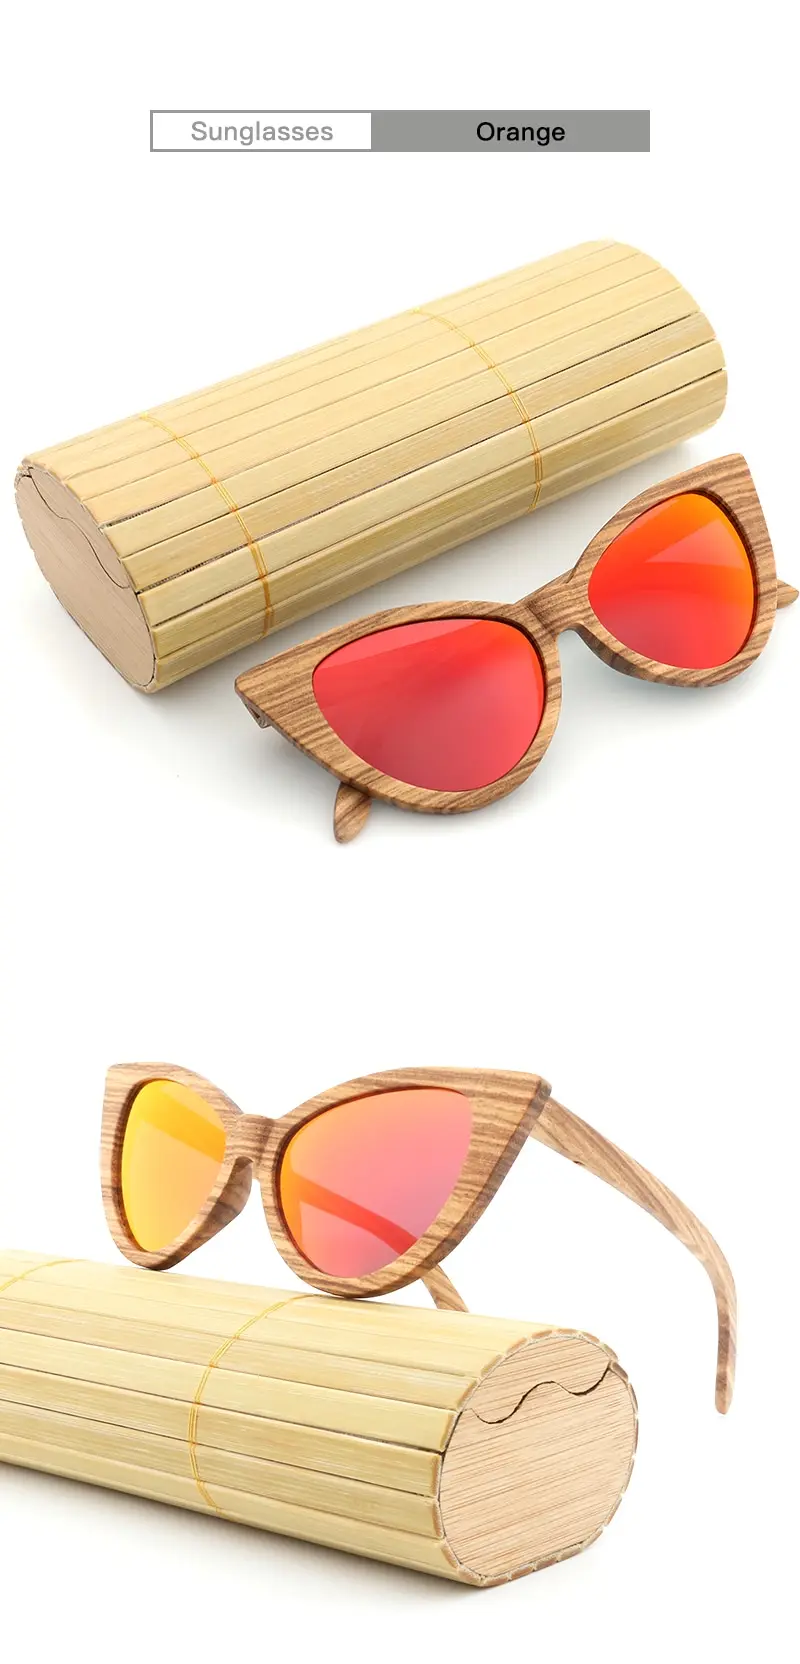 Дизайн бамбуковые деревянные солнцезащитные очки ручной работы Зебра Дерево Мода бабочка женские солнцезащитные очки